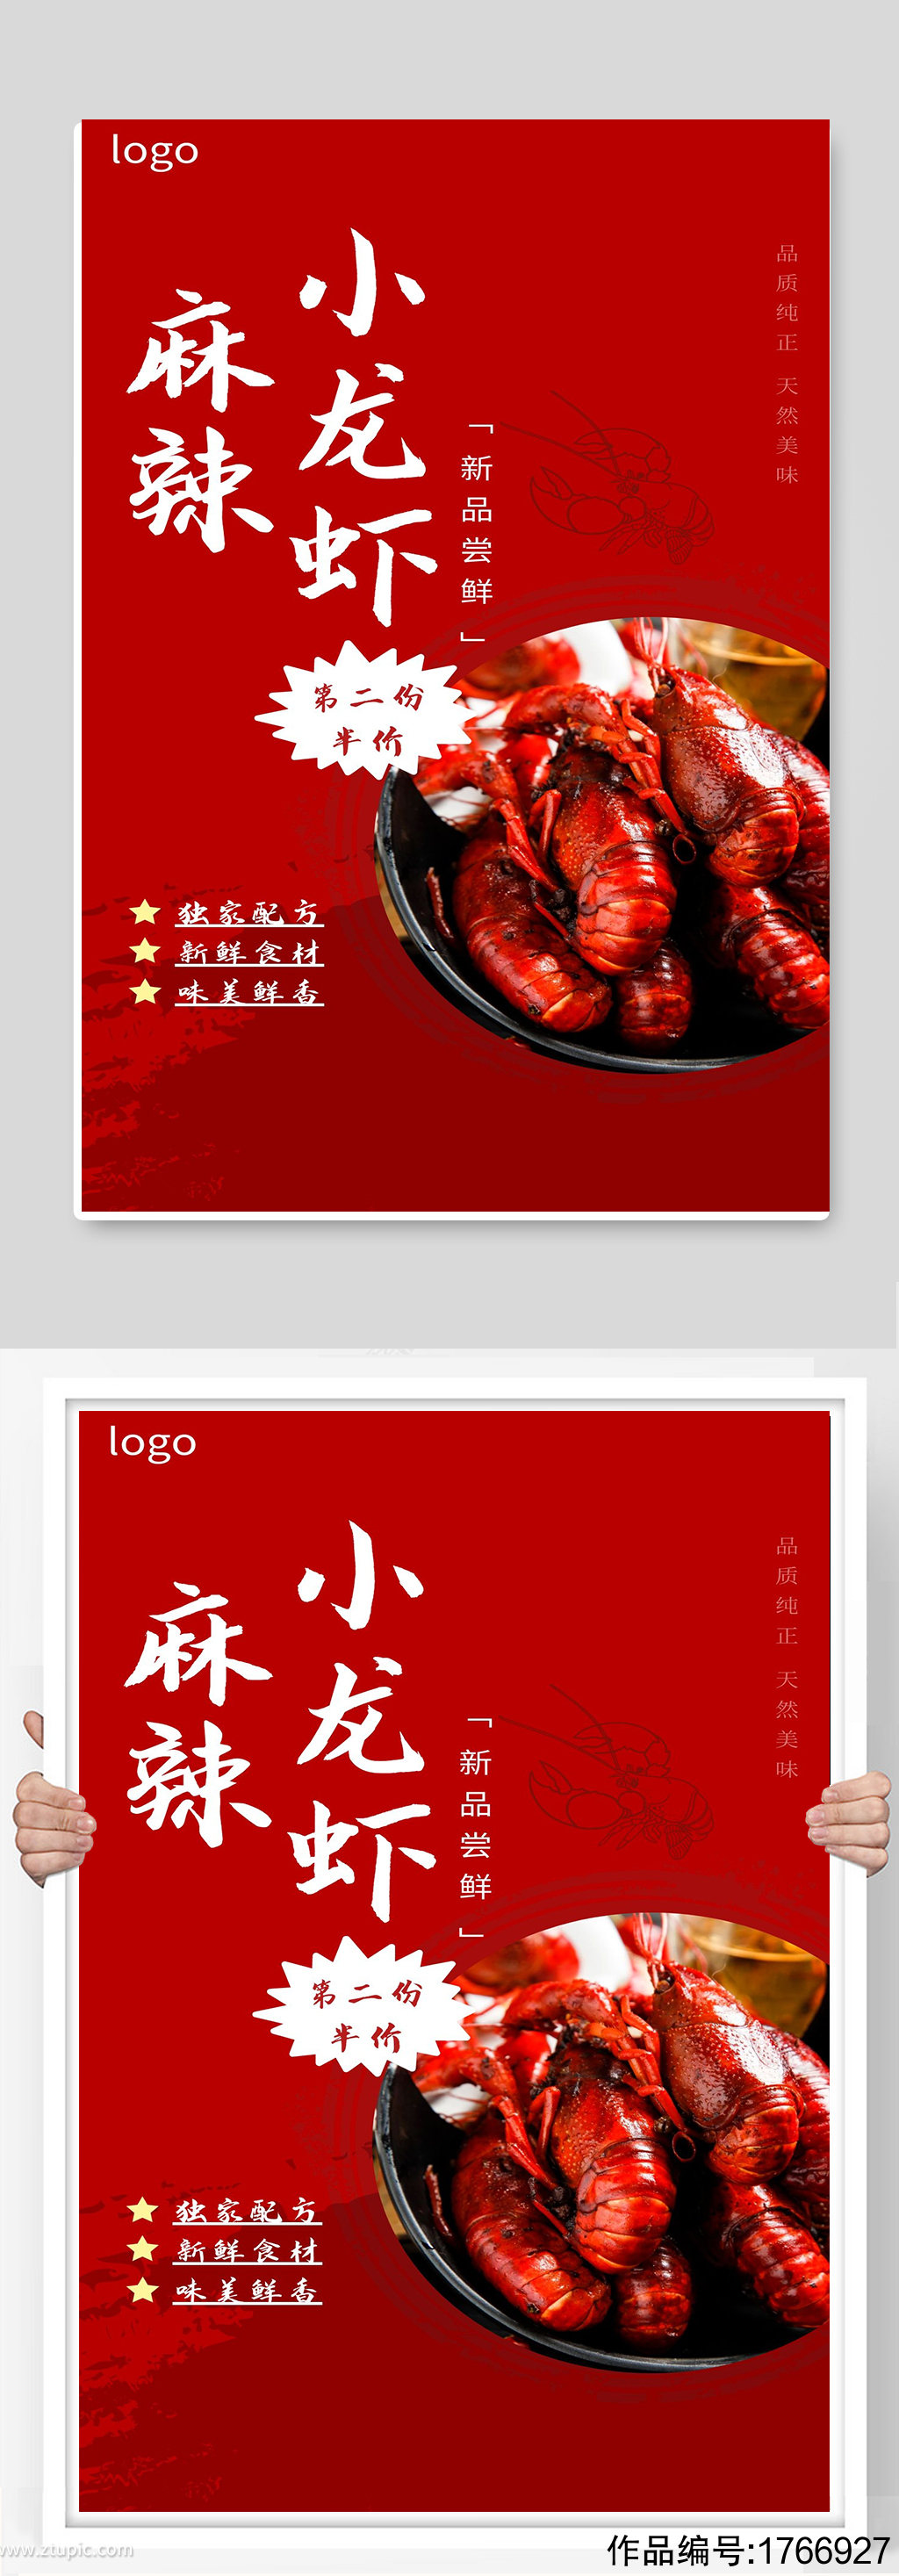 麻辣小龙虾宣传海报设计